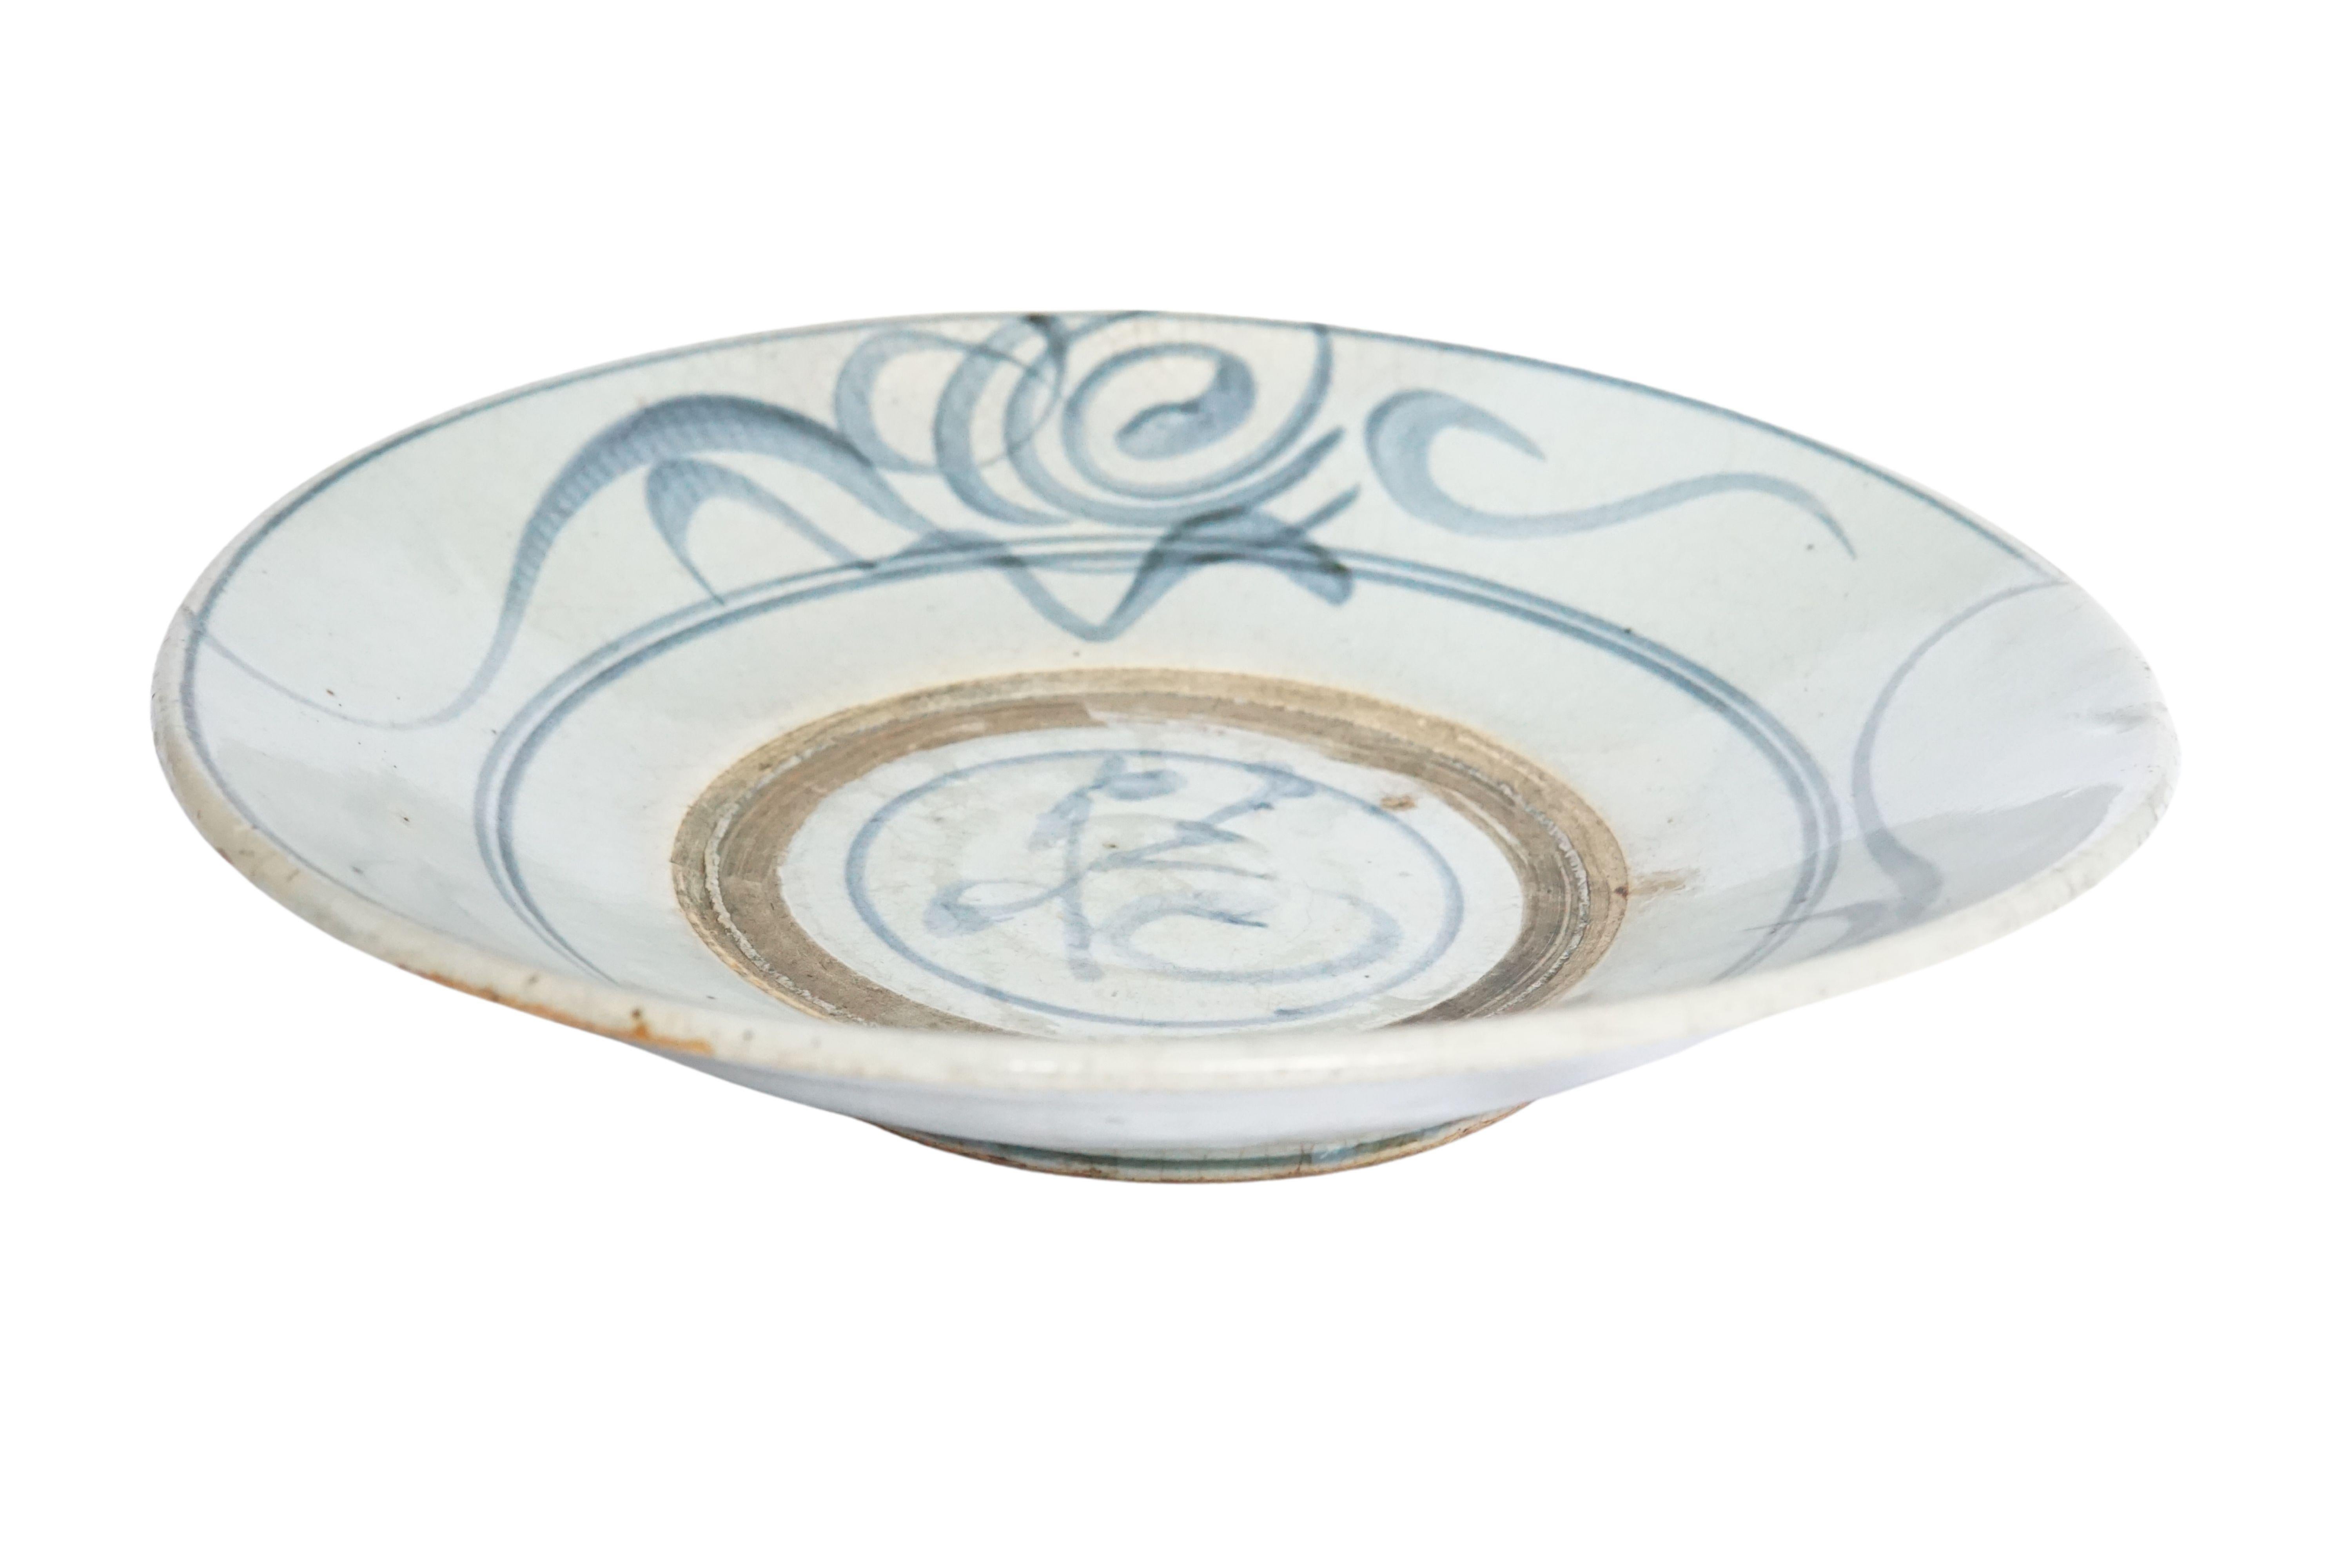 Dieser chinesische Keramikteller aus der Qing-Dynastie wird von einer blau-grauen Glasur dominiert und weist wunderschöne handgemalte blaue Striche auf. Einst als alltäglicher Teller verwendet, ist er heute ein großartiges Beispiel für chinesische